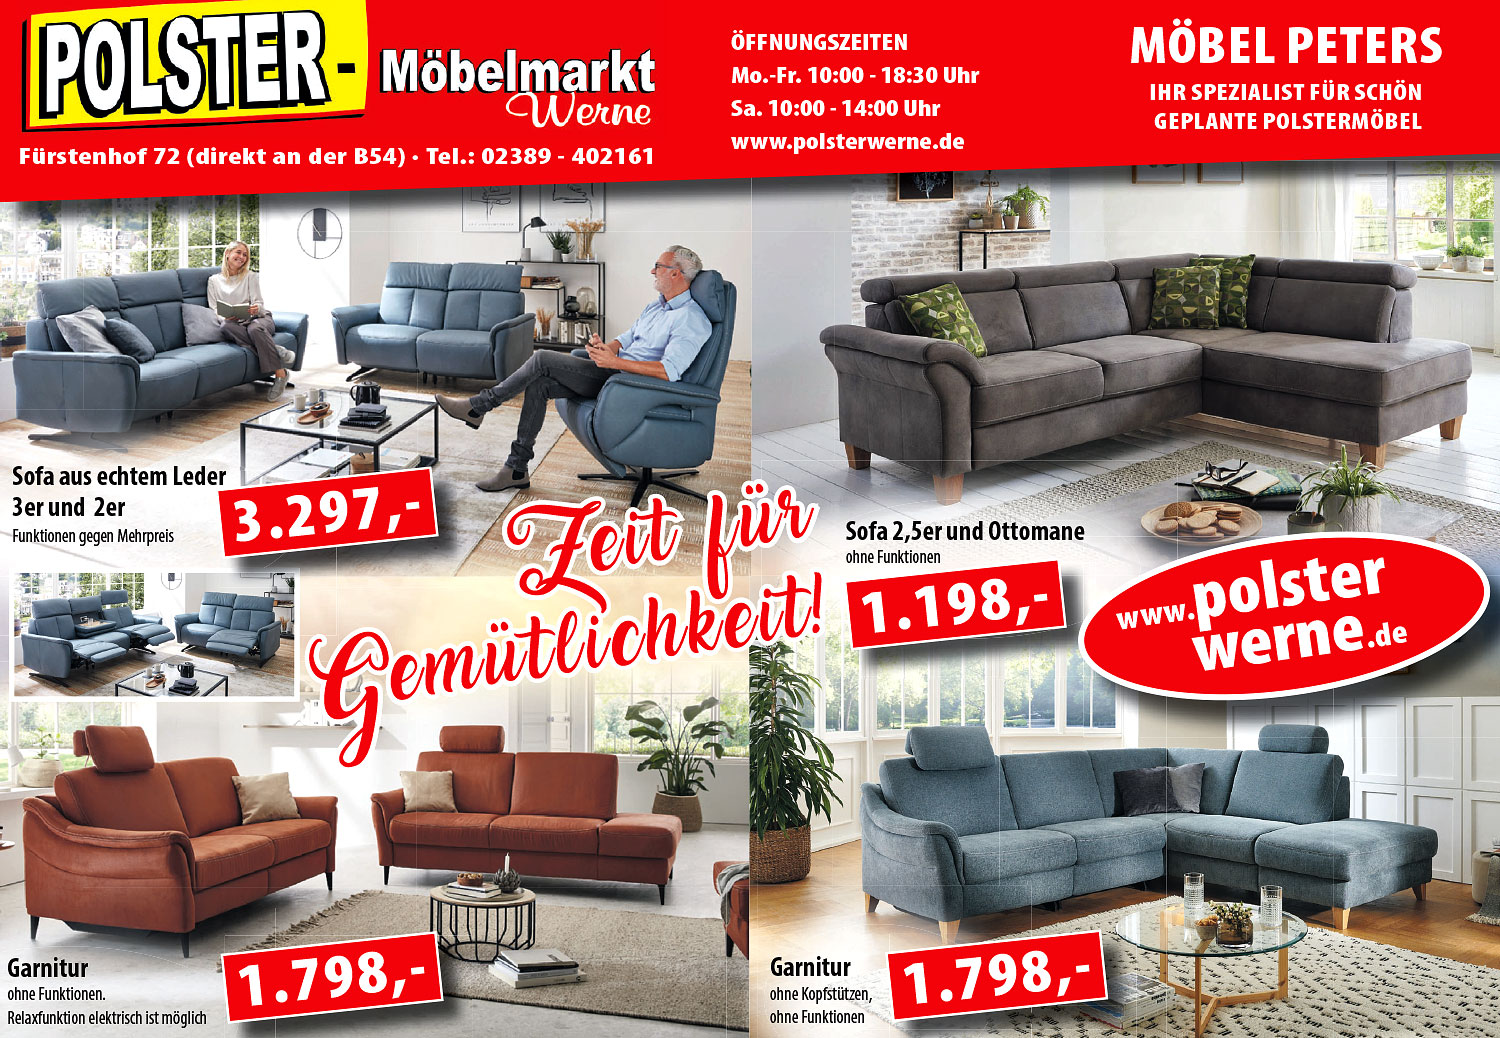 Zeit für Gemütlichkeit - mit den attraktiven Polstermöbeln vom Polster-Möbelmarkt Werne!